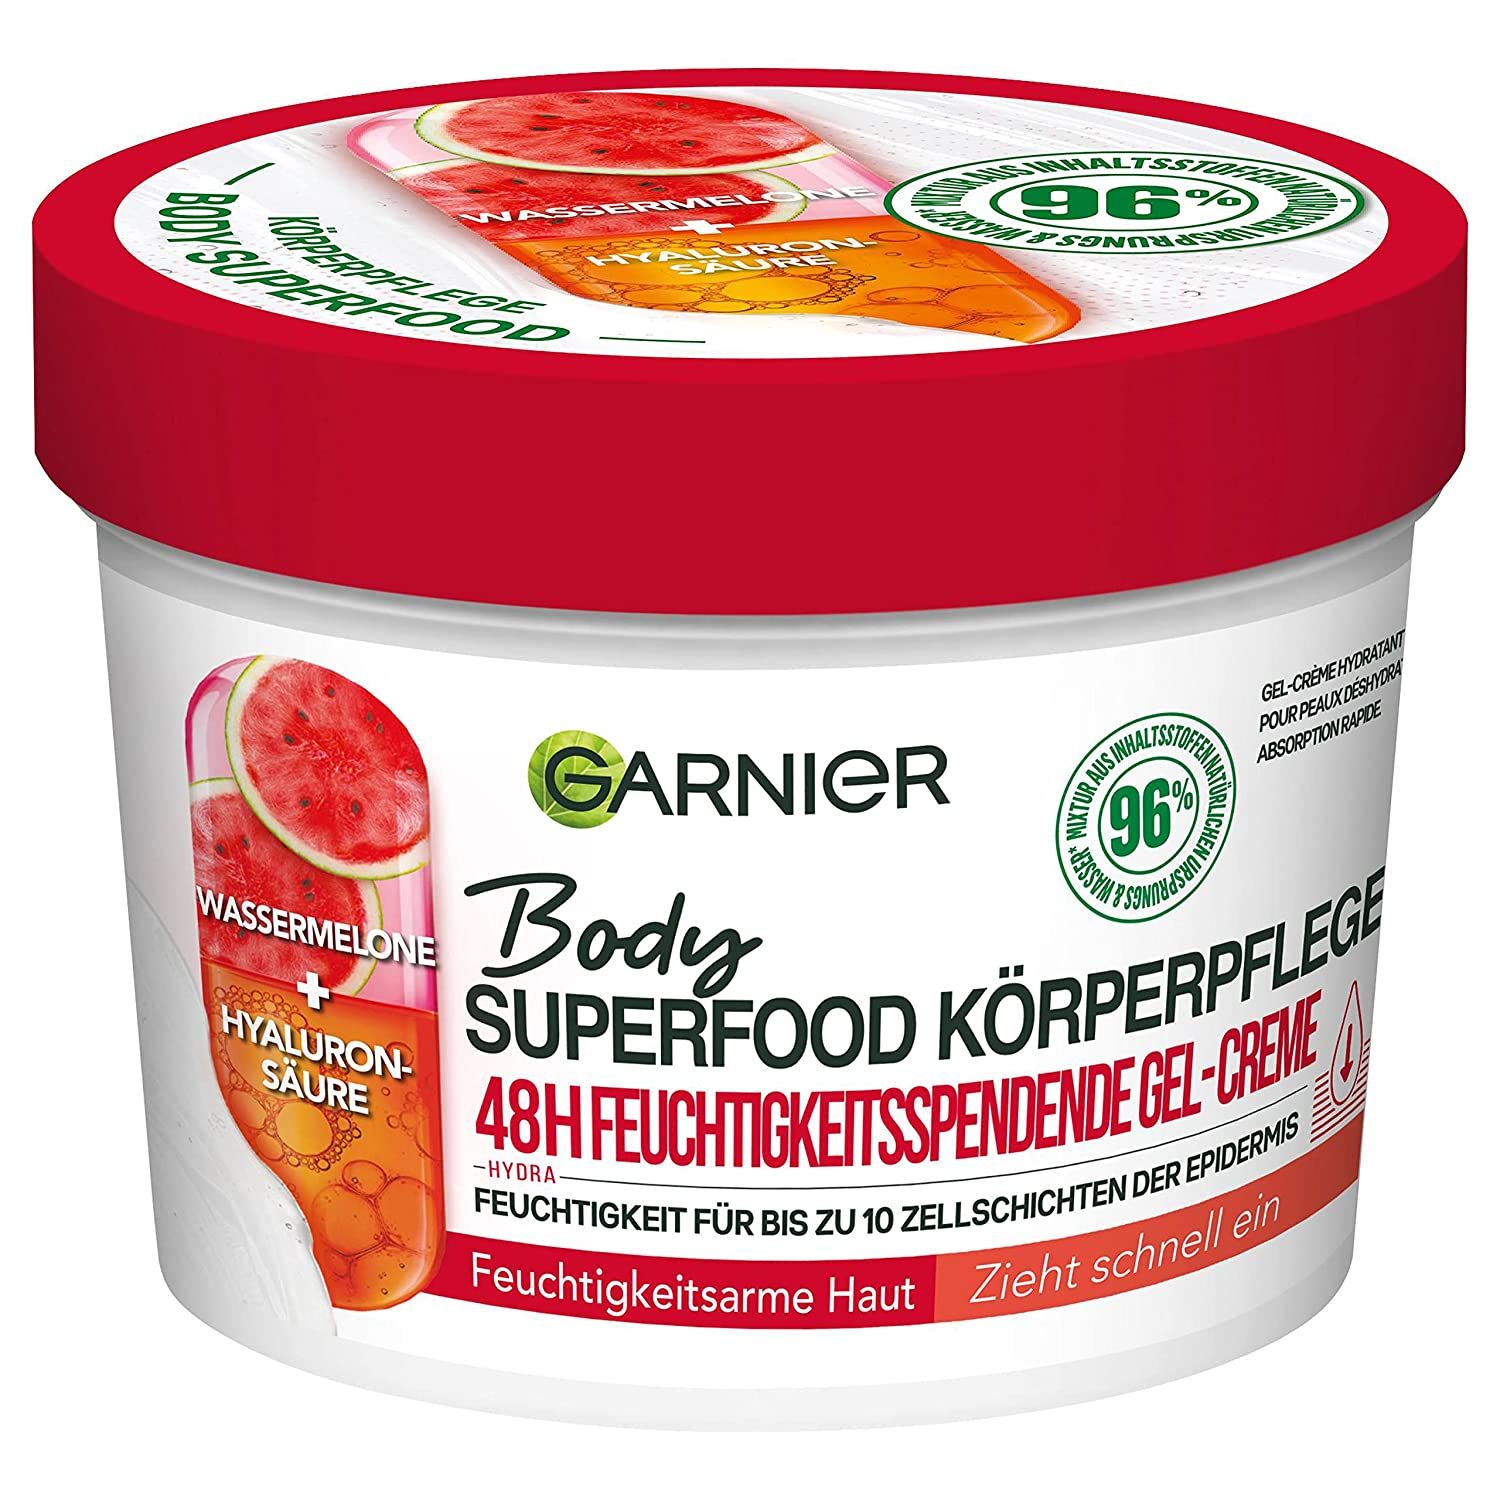 Garnier Erfrischende Körperpflege für trockene Haut, Body Butter mit Wassermelone und Hyaluronsäure